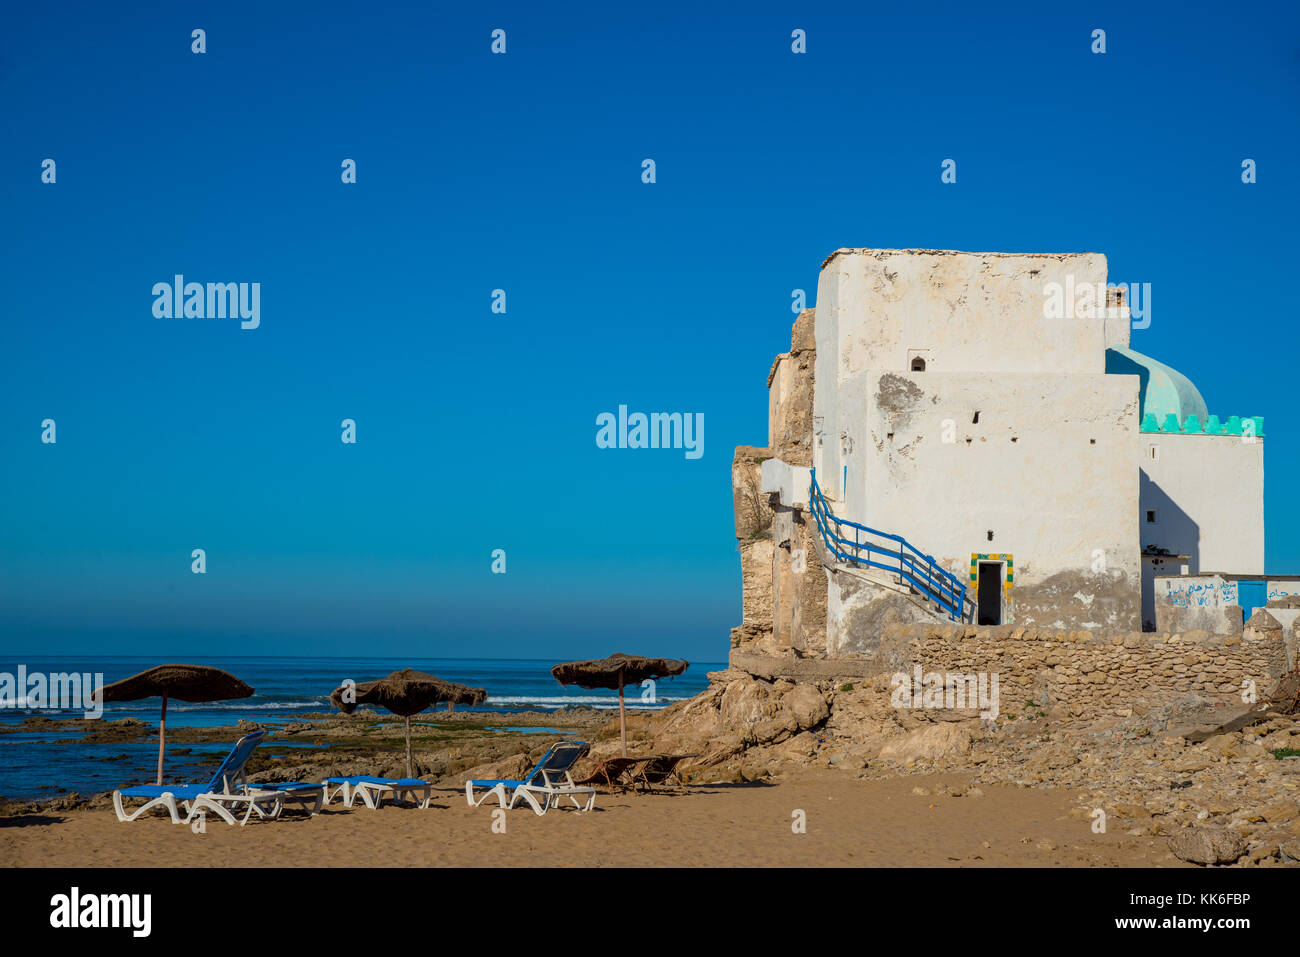 Spiaggia di Sidi Kaouki, maroc Foto Stock